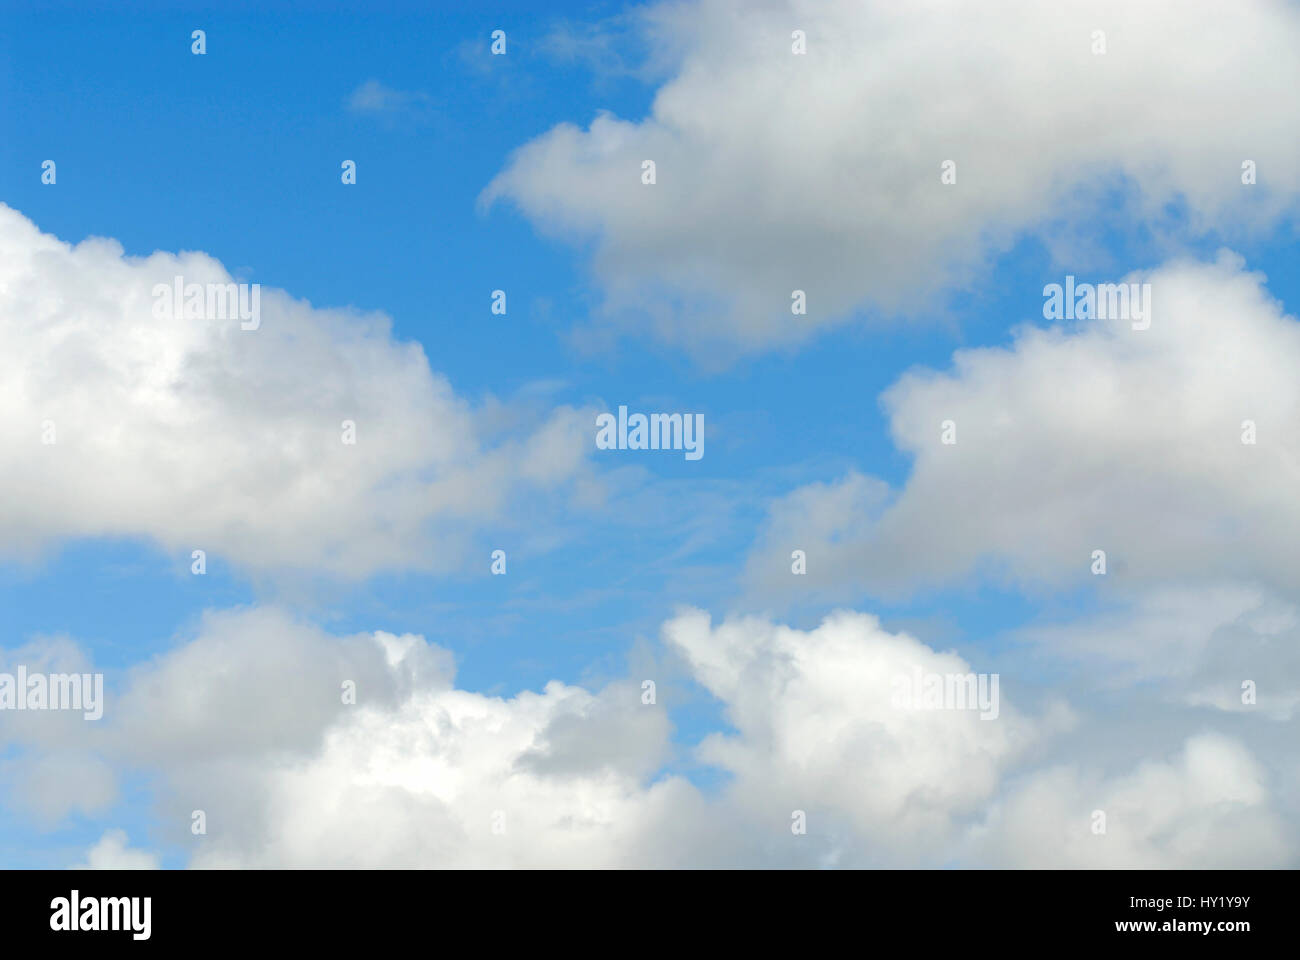 Esta foto muestra un balance perfecto azul cielo parcialmente cubierto con cúmulos. La imagen fue tomada en una mañana soleada. Foto de stock